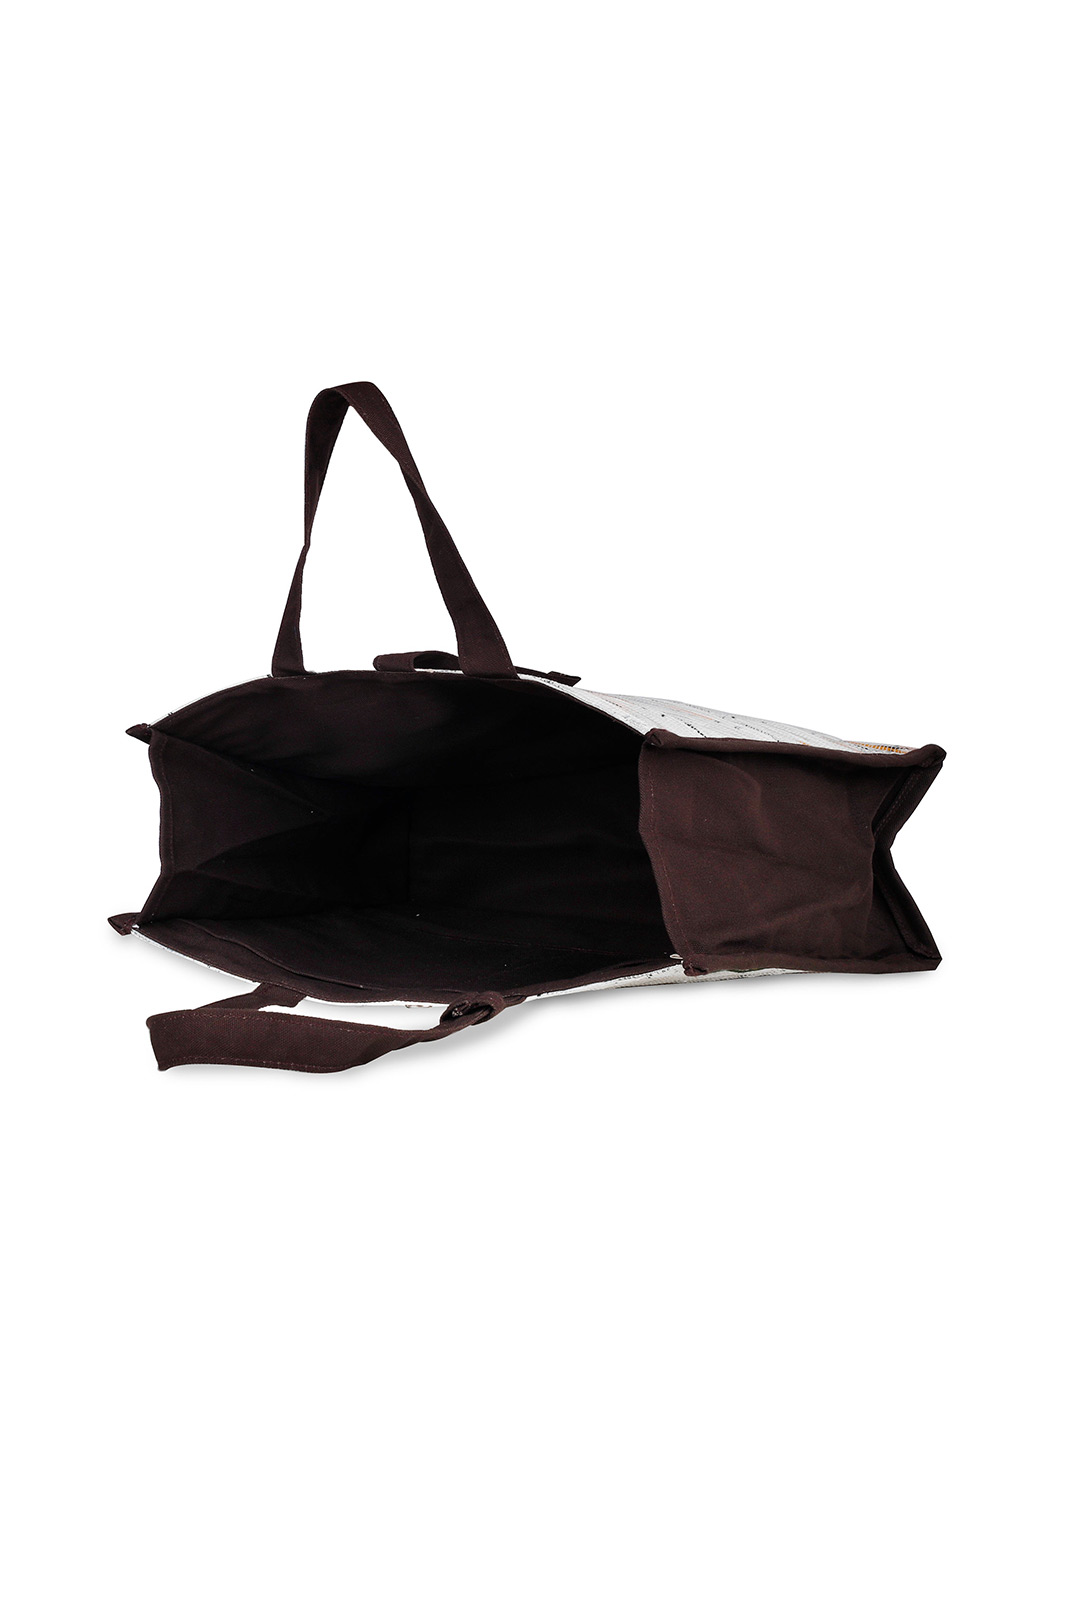 Madame Black Hand Bag | Buy COLOR Black Hand Bag Online for | Glamly